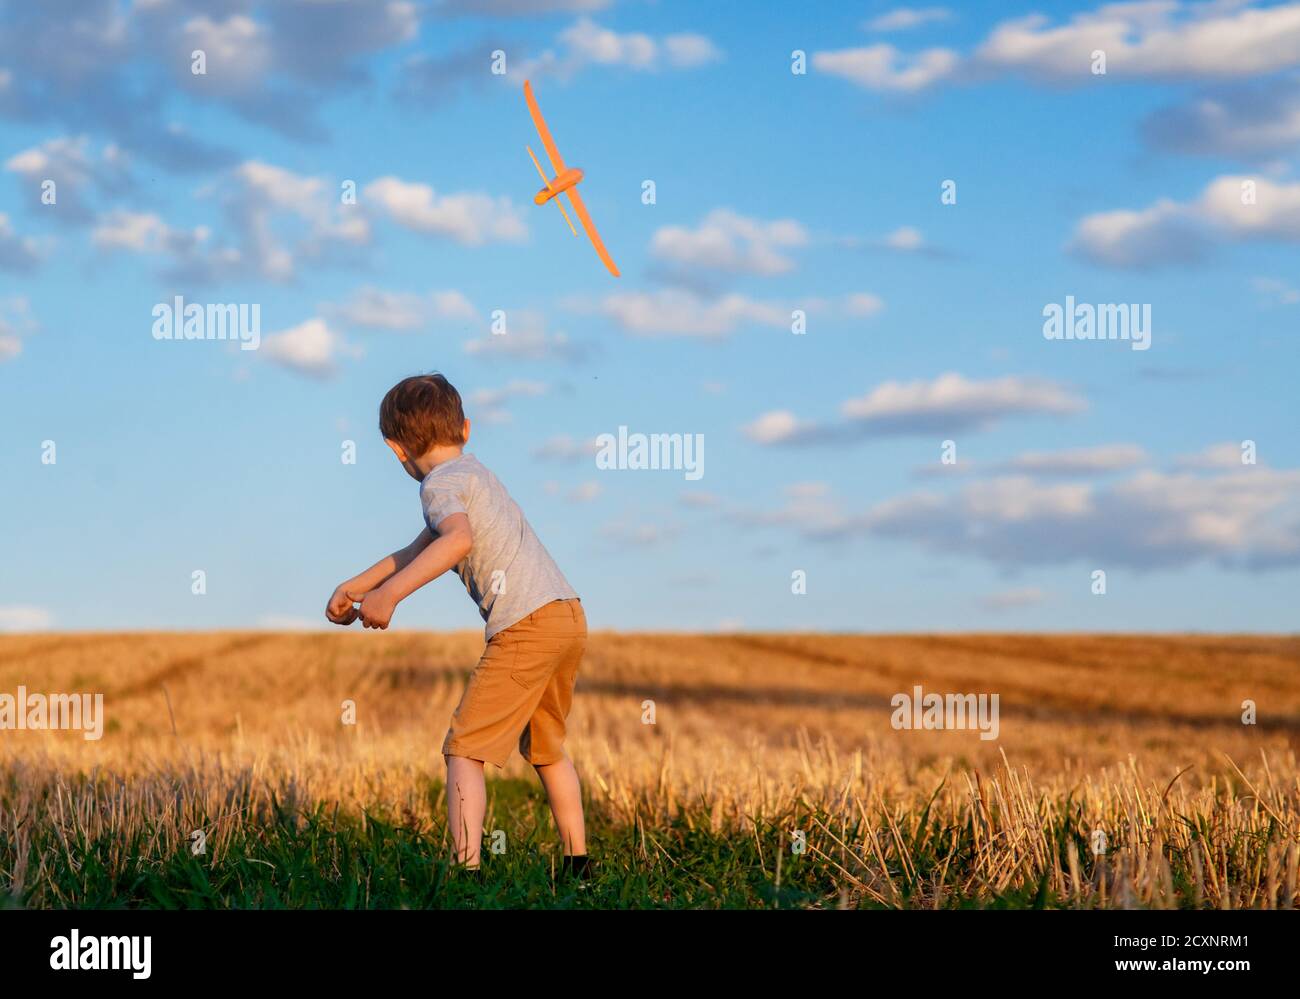 Enfant heureux courant avec avion jouet sur fond de ciel concept de famille heureux. Rêve d'enfance Banque D'Images